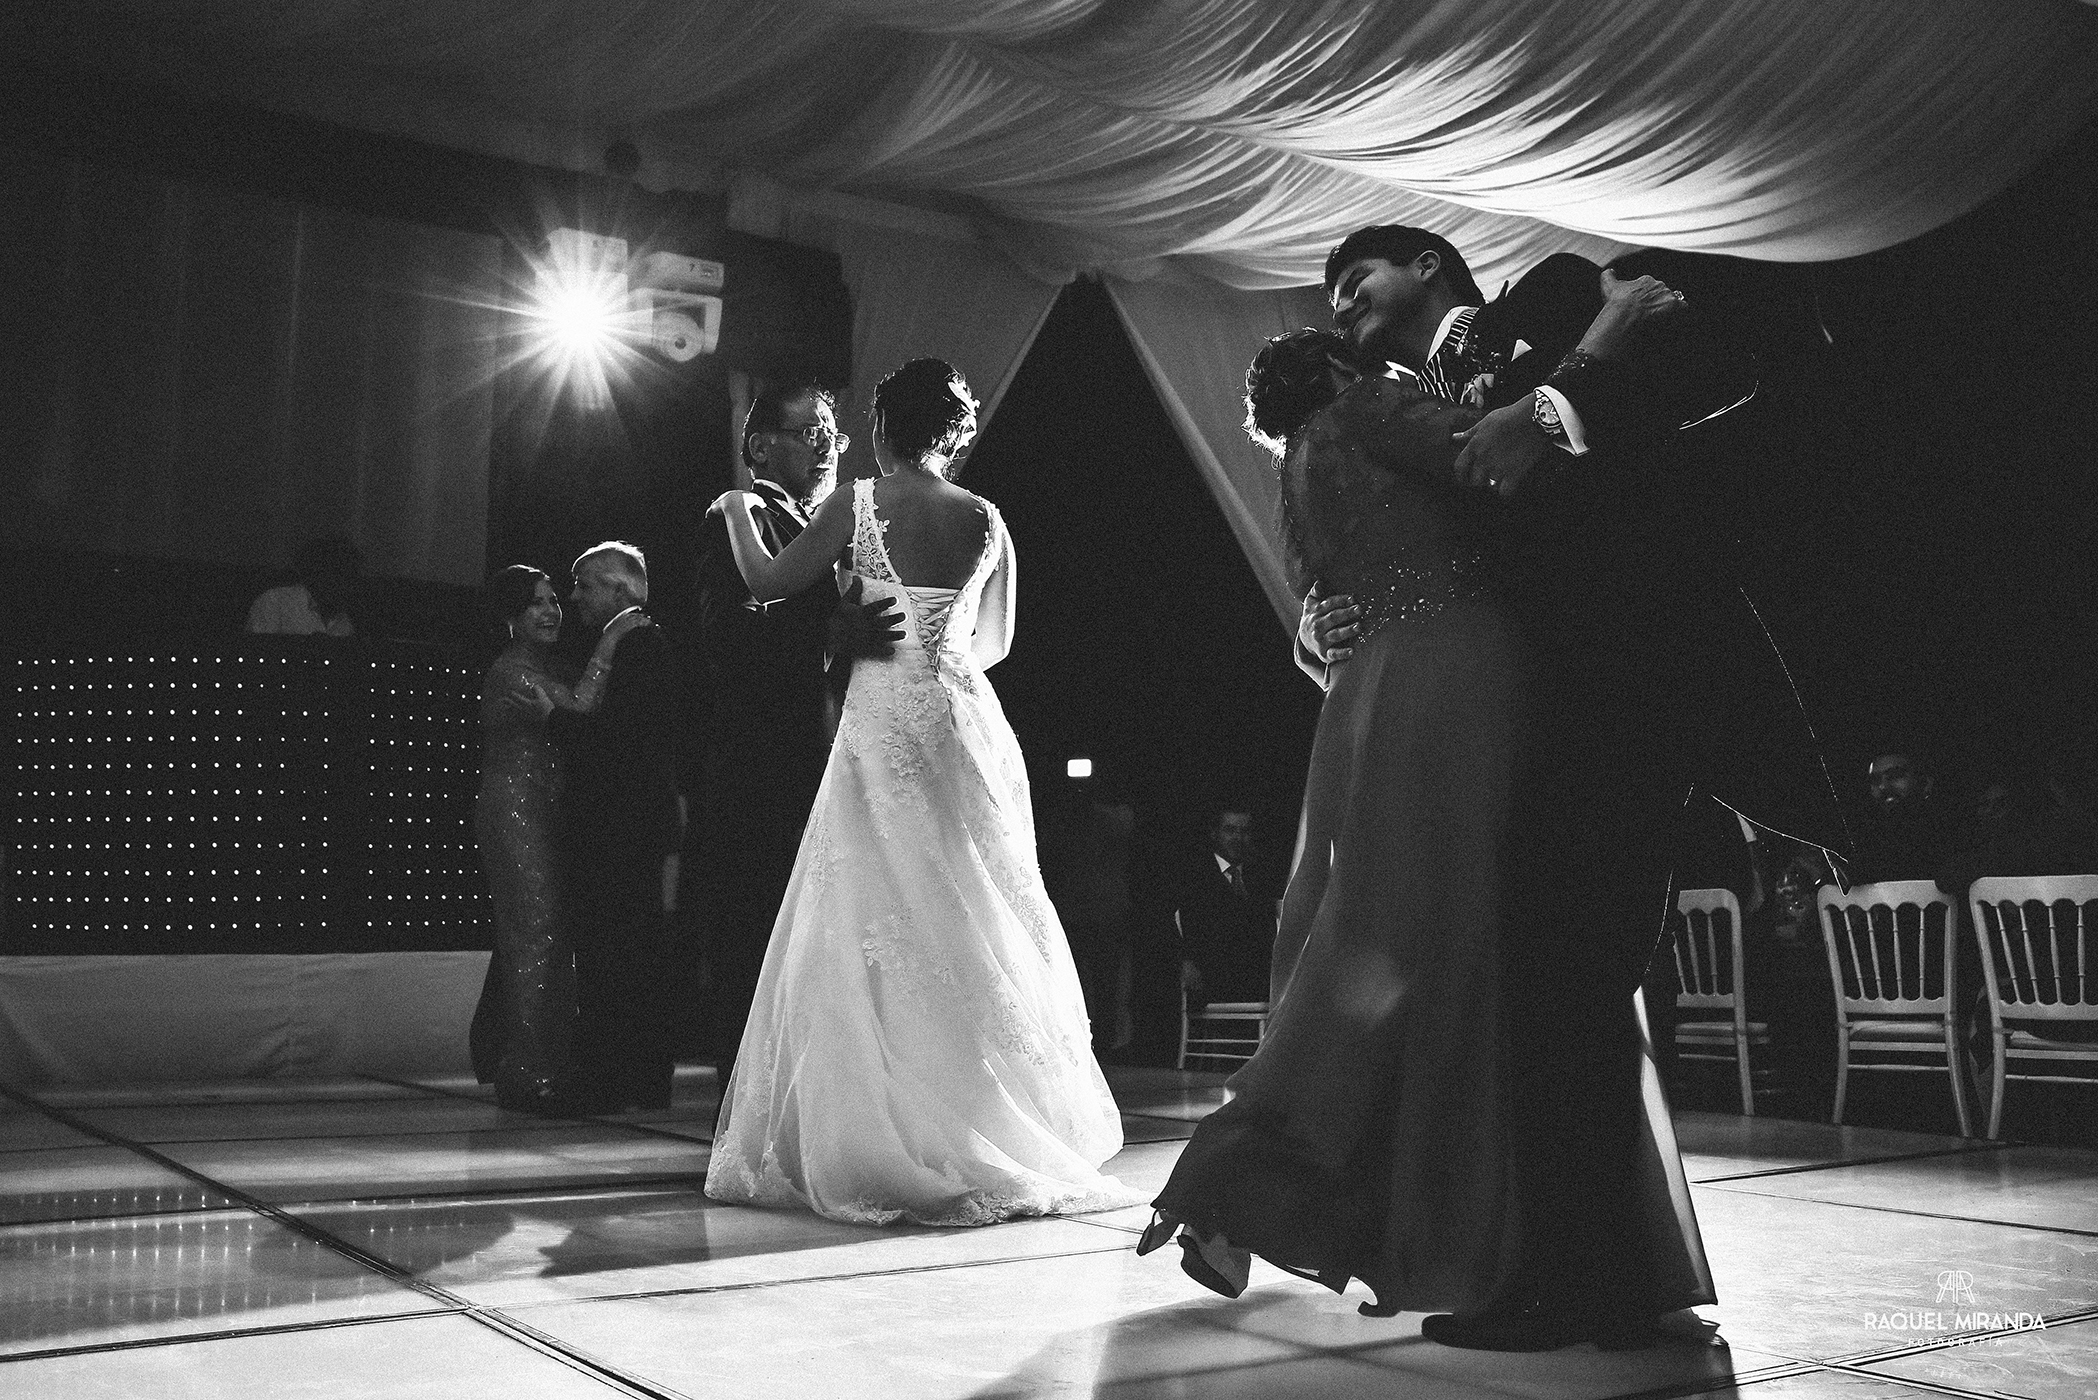 raquel miranda fotografía - wedding - odette&carlos-13.jpg